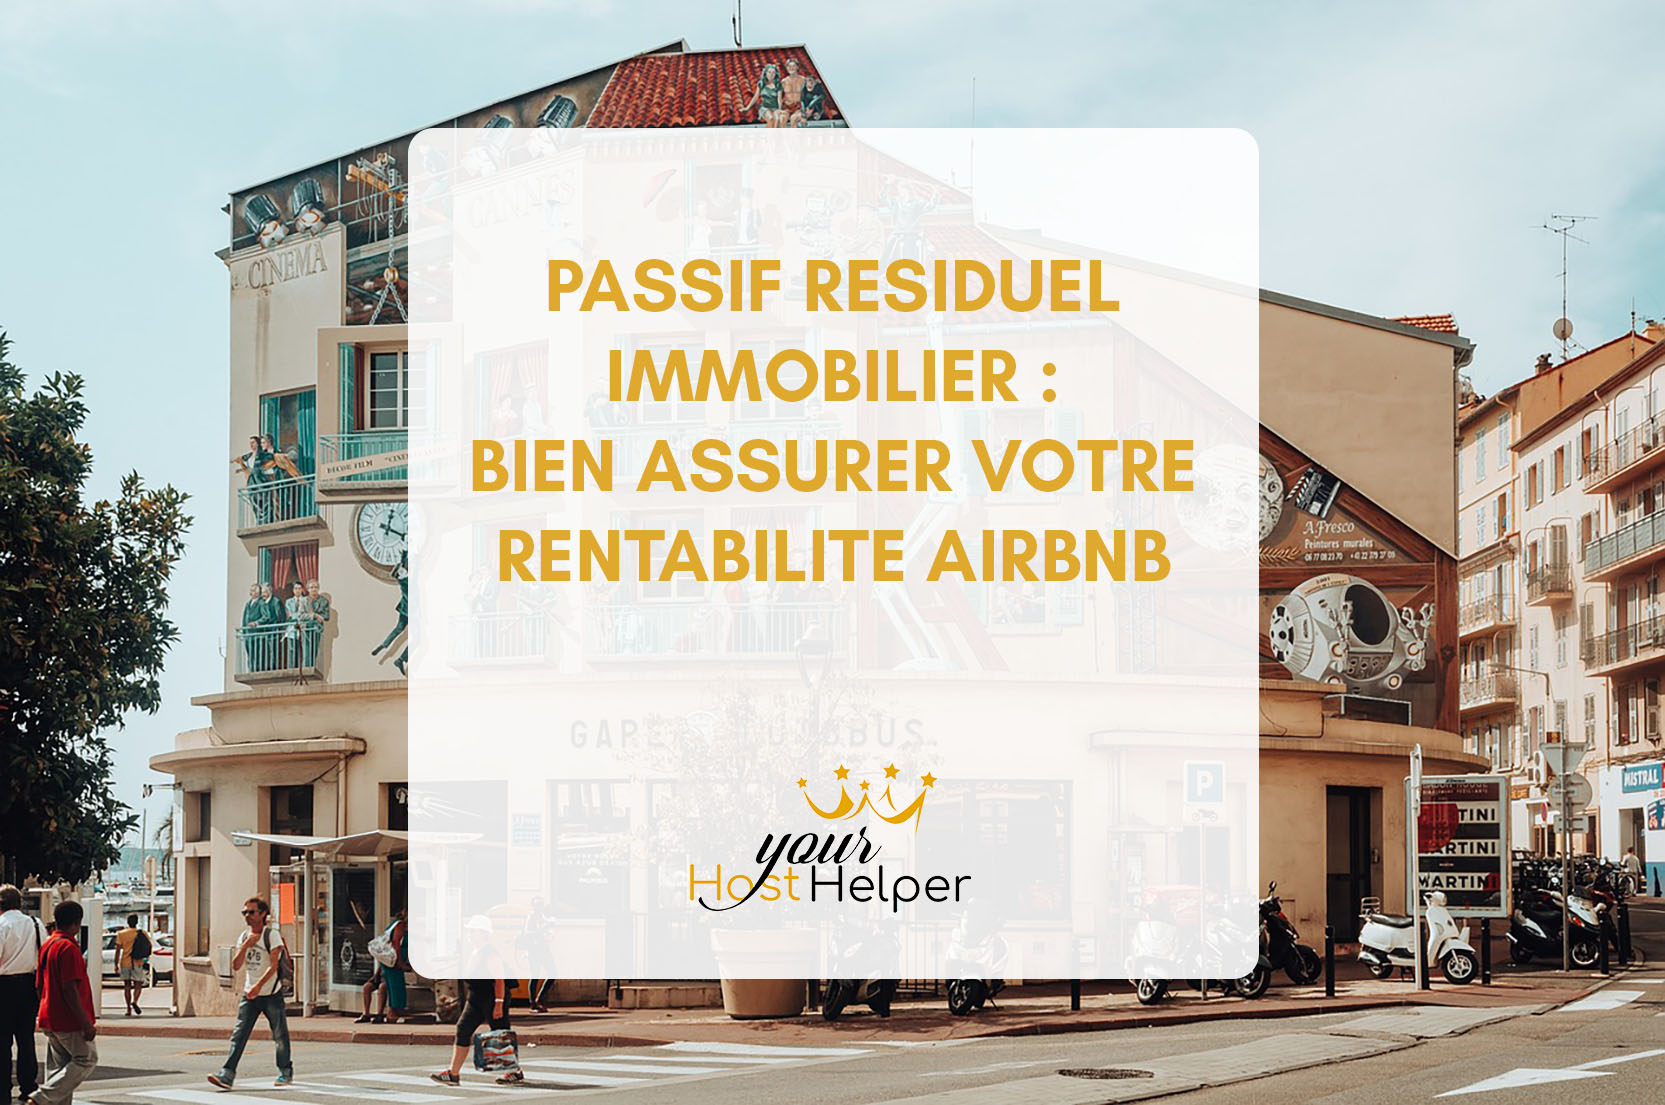 Прочетете повече за статията Остатъчни задължения за недвижимо имущество: гарантиране на рентабилността на вашия Airbnb с вашата консиерж услуга в Кан